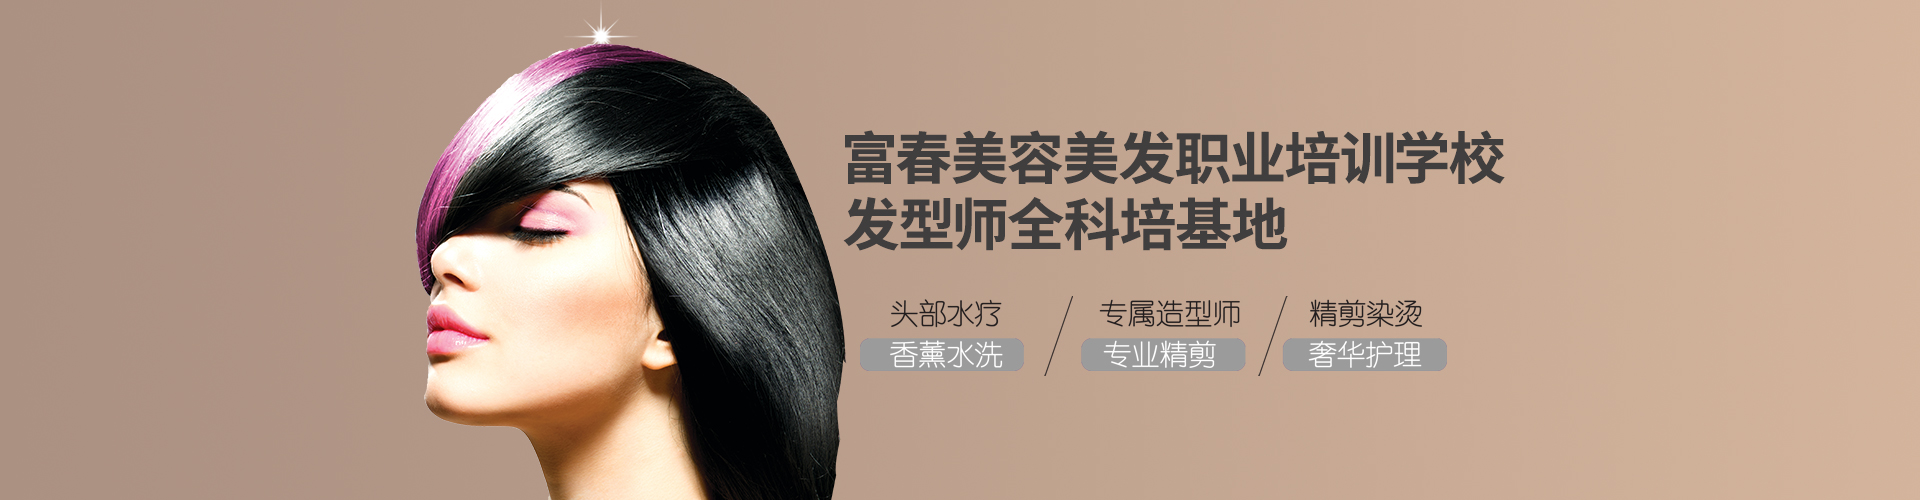 在线留言-蚌埠市美容美发行业协会-蚌埠美容美发-蚌埠美发协会